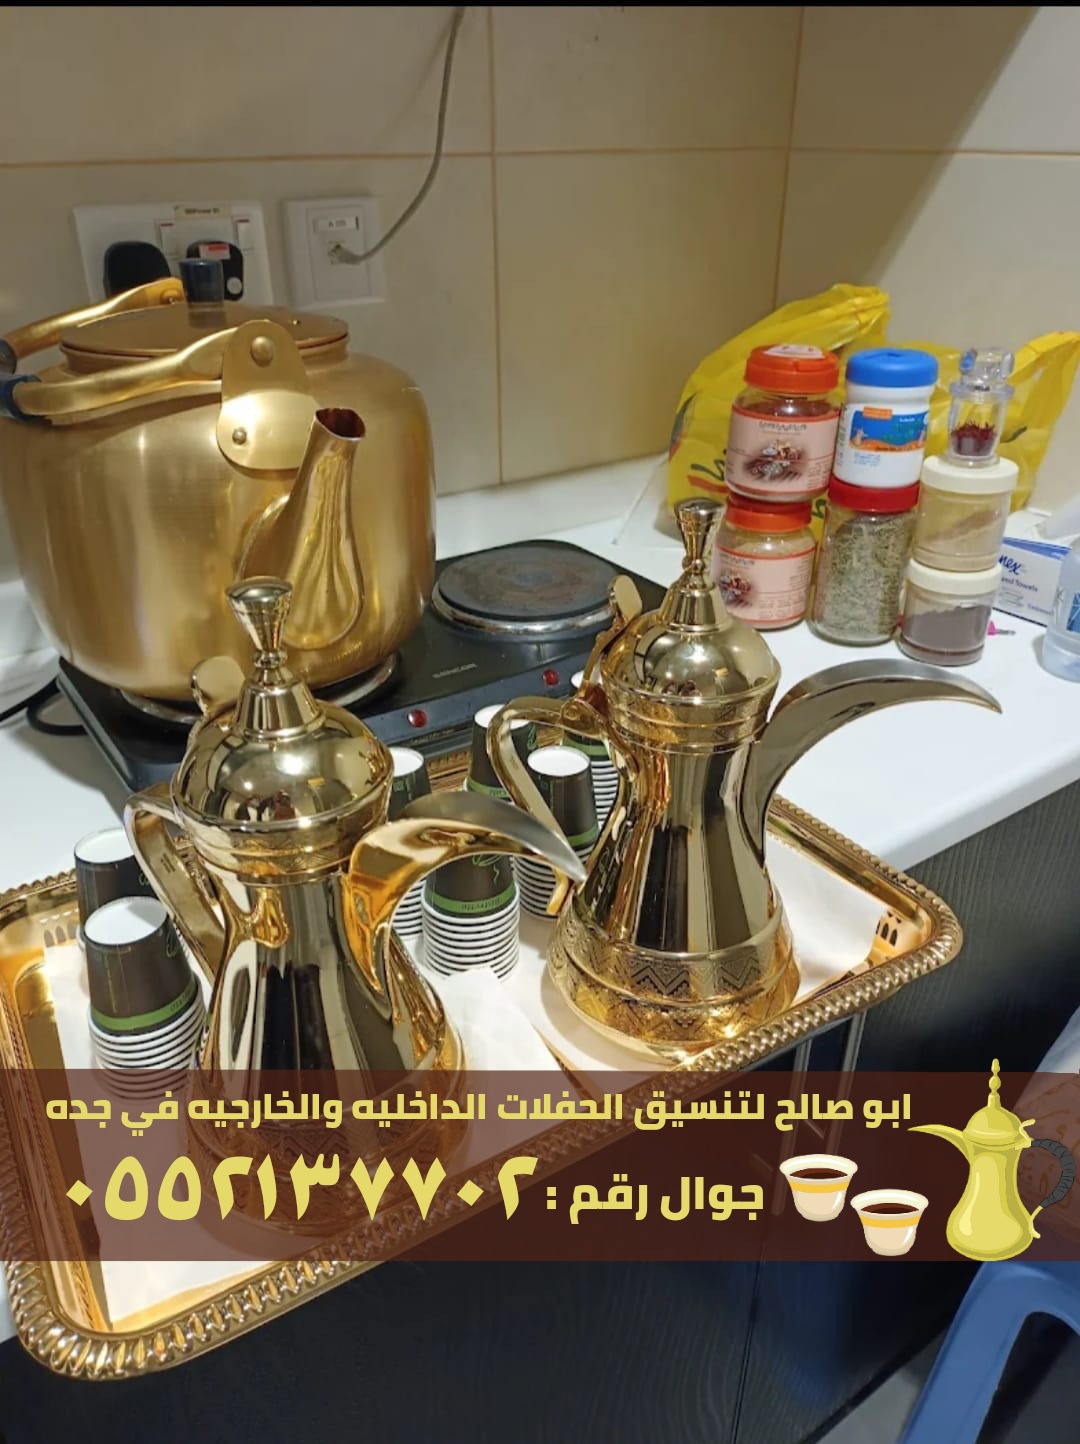 صبابين ومباشرين قهوة في جدة , 0552137702 P_2371opv885